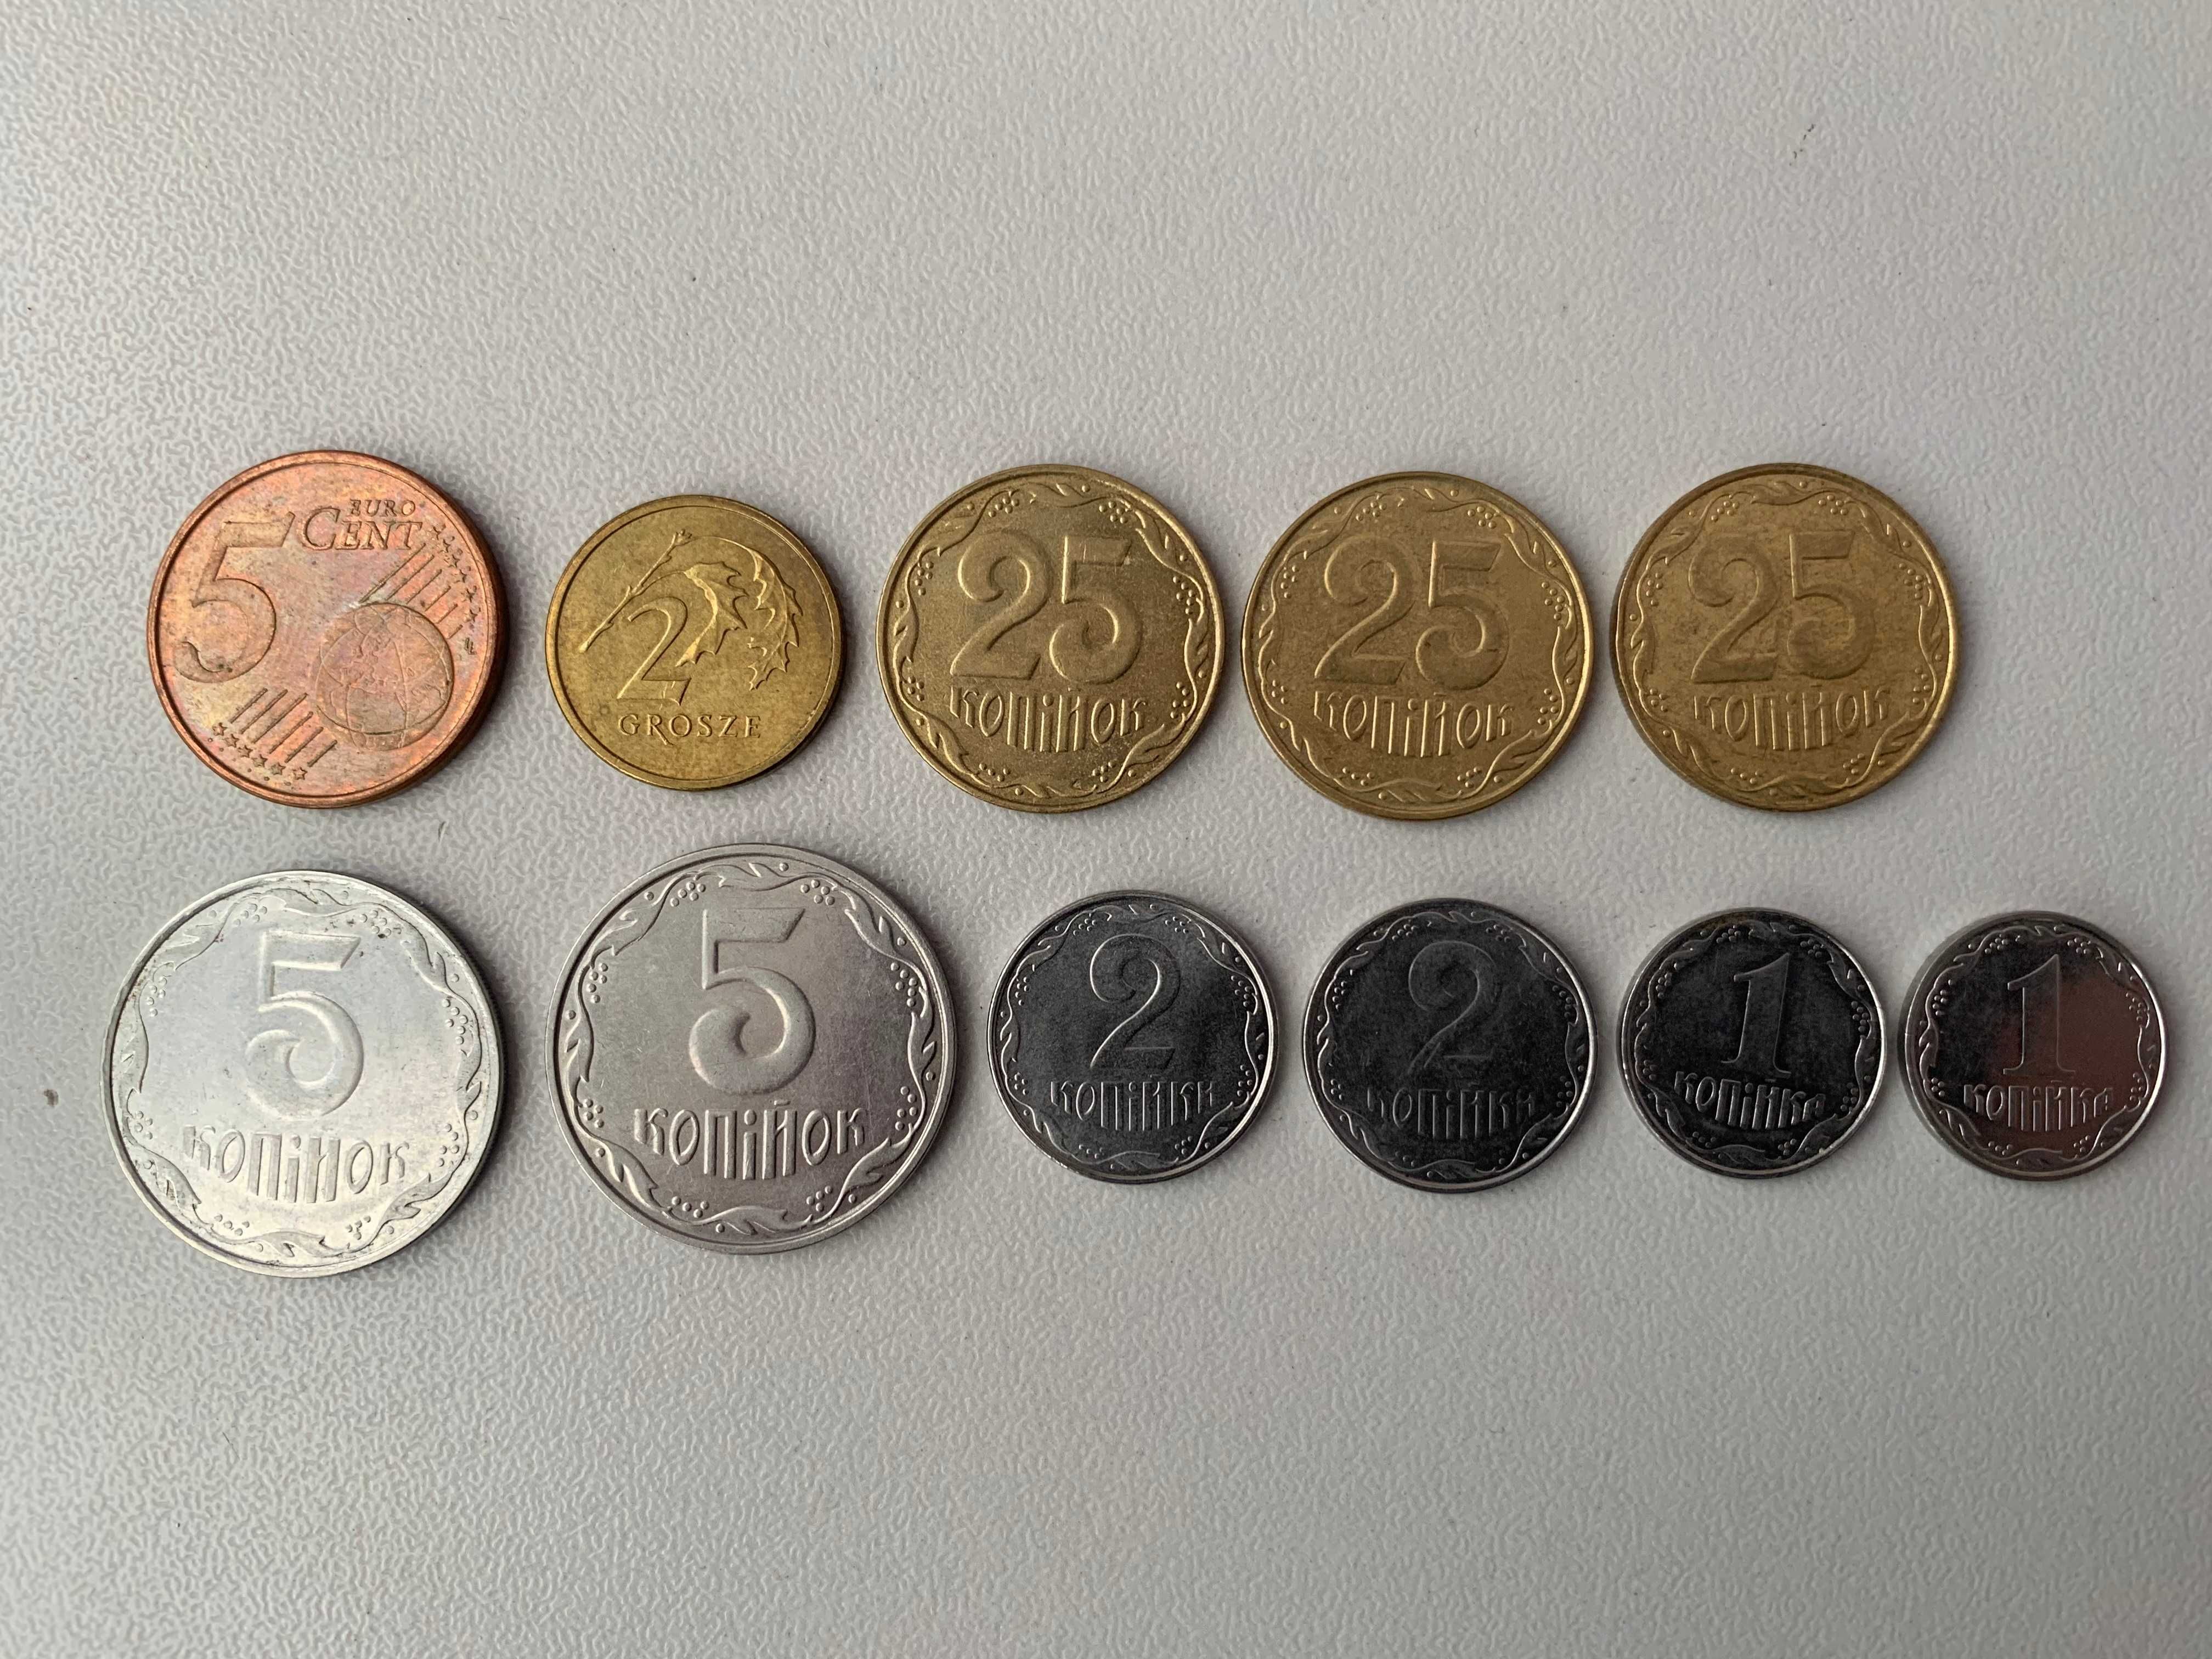 Продам монету 2 грн Панас Мирний 1999 р, одну грн 2001, 50 коп 1992 р,